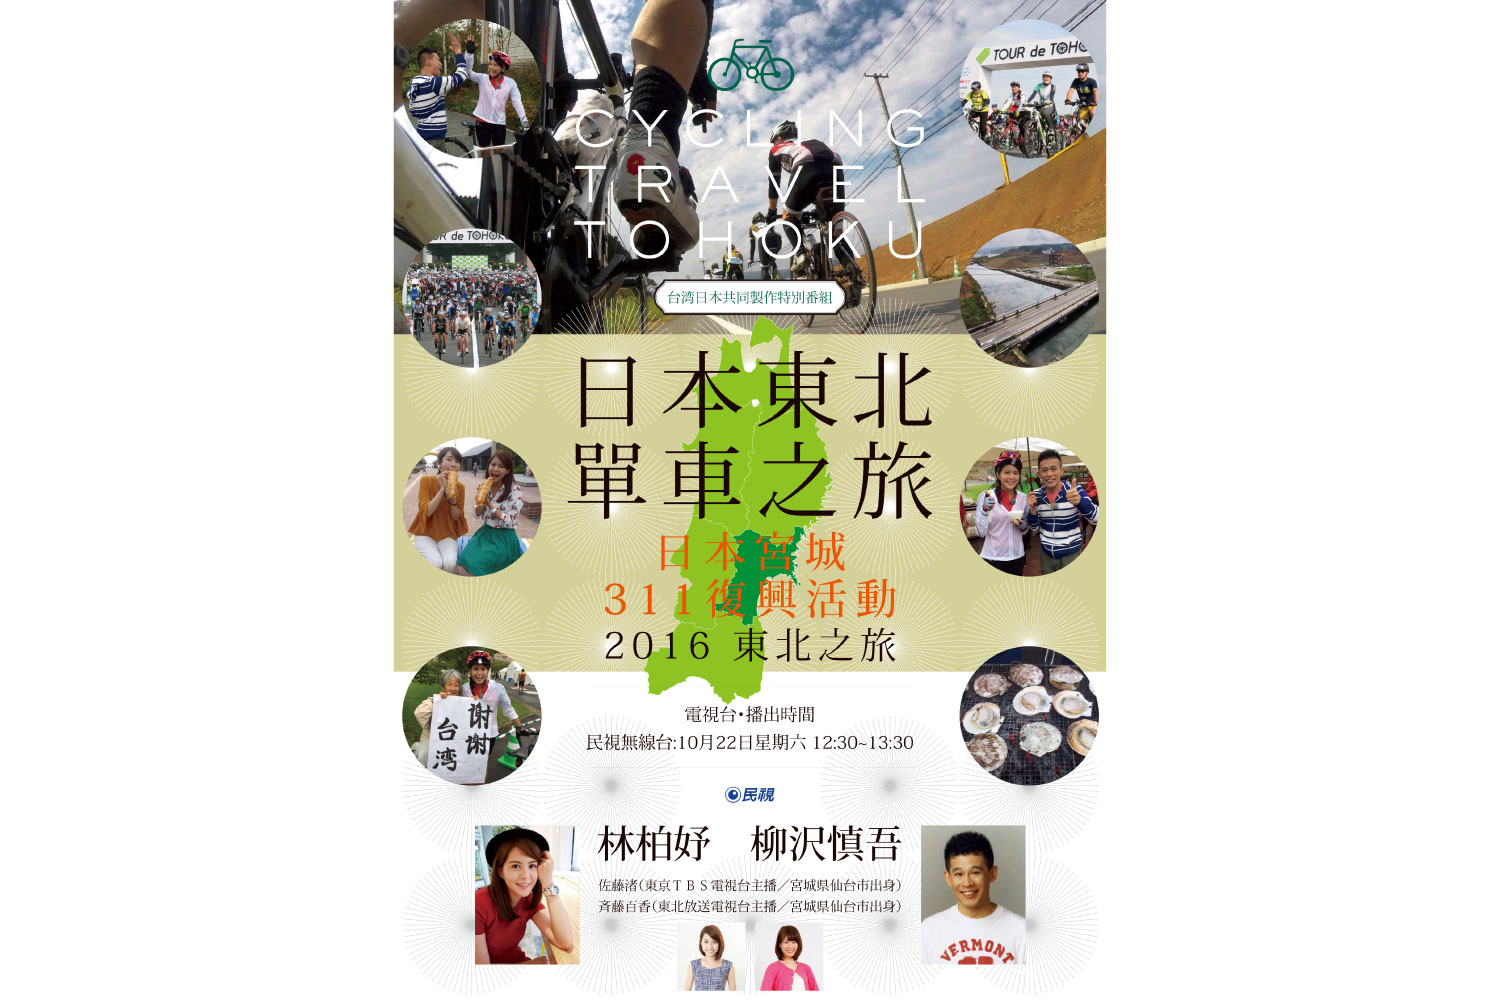 Miyagi Japan’s 3/11 Reconstruction Event: The Tour de Tohoku 2016